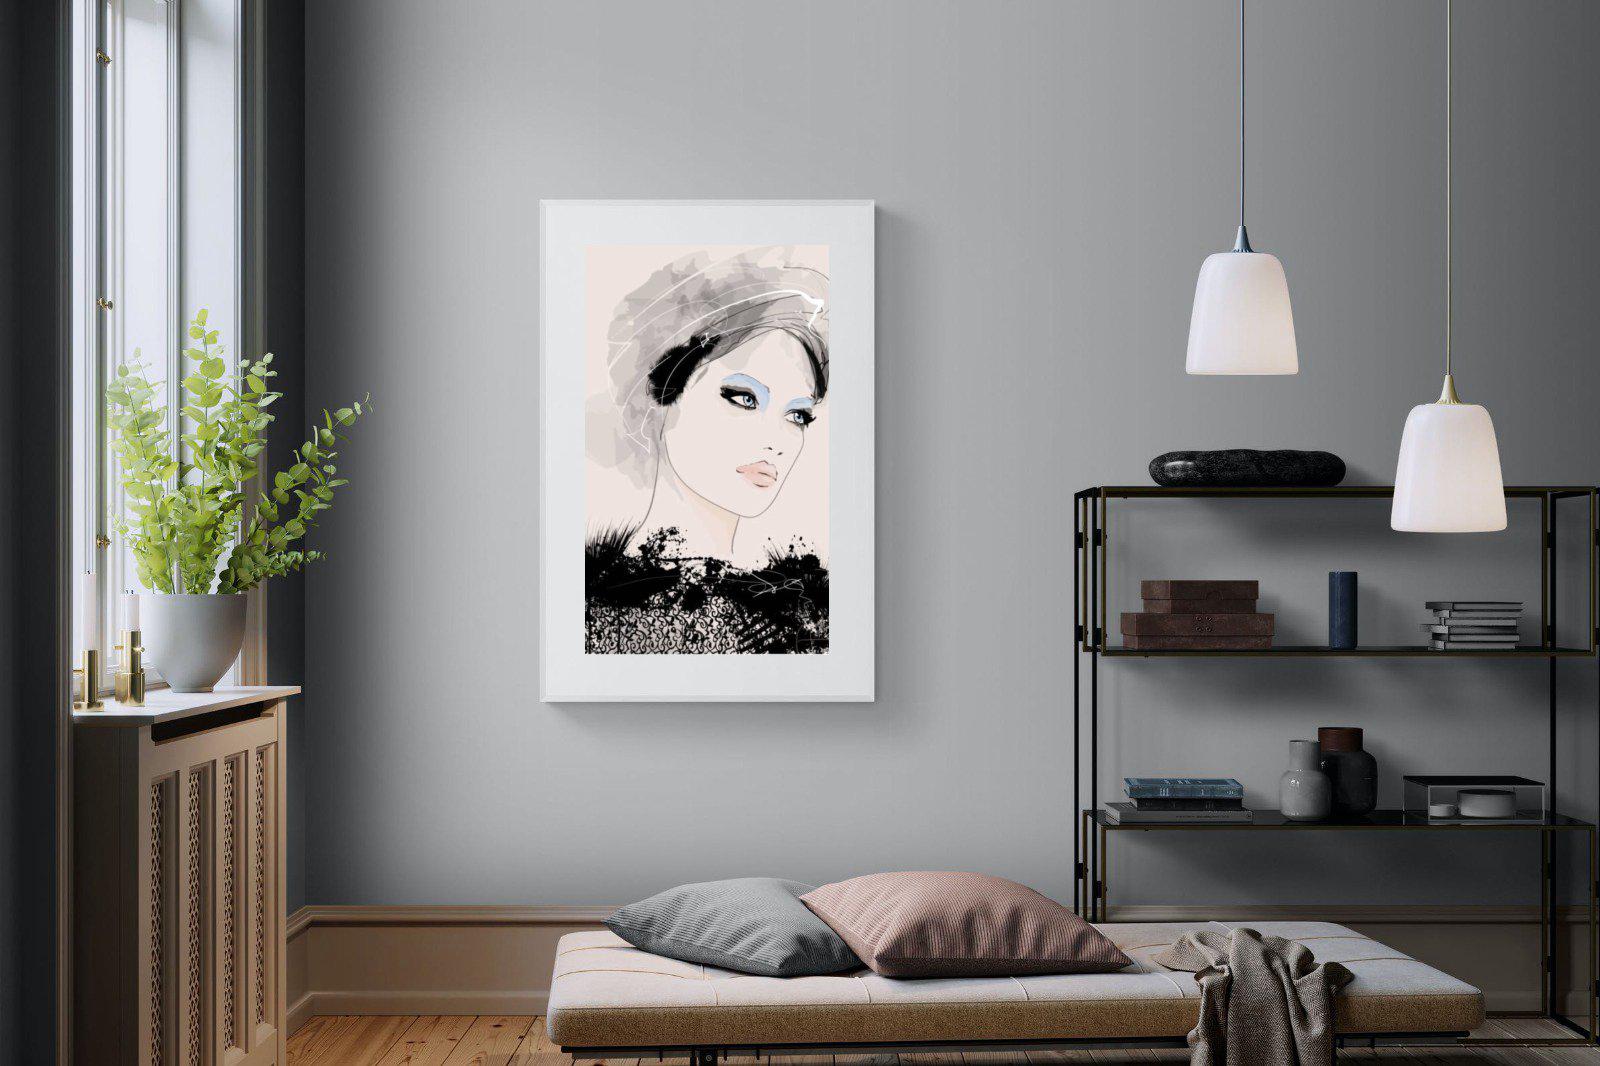 Mademoiselle-Wall_Art-100 x 150cm-Framed Print-White-Pixalot